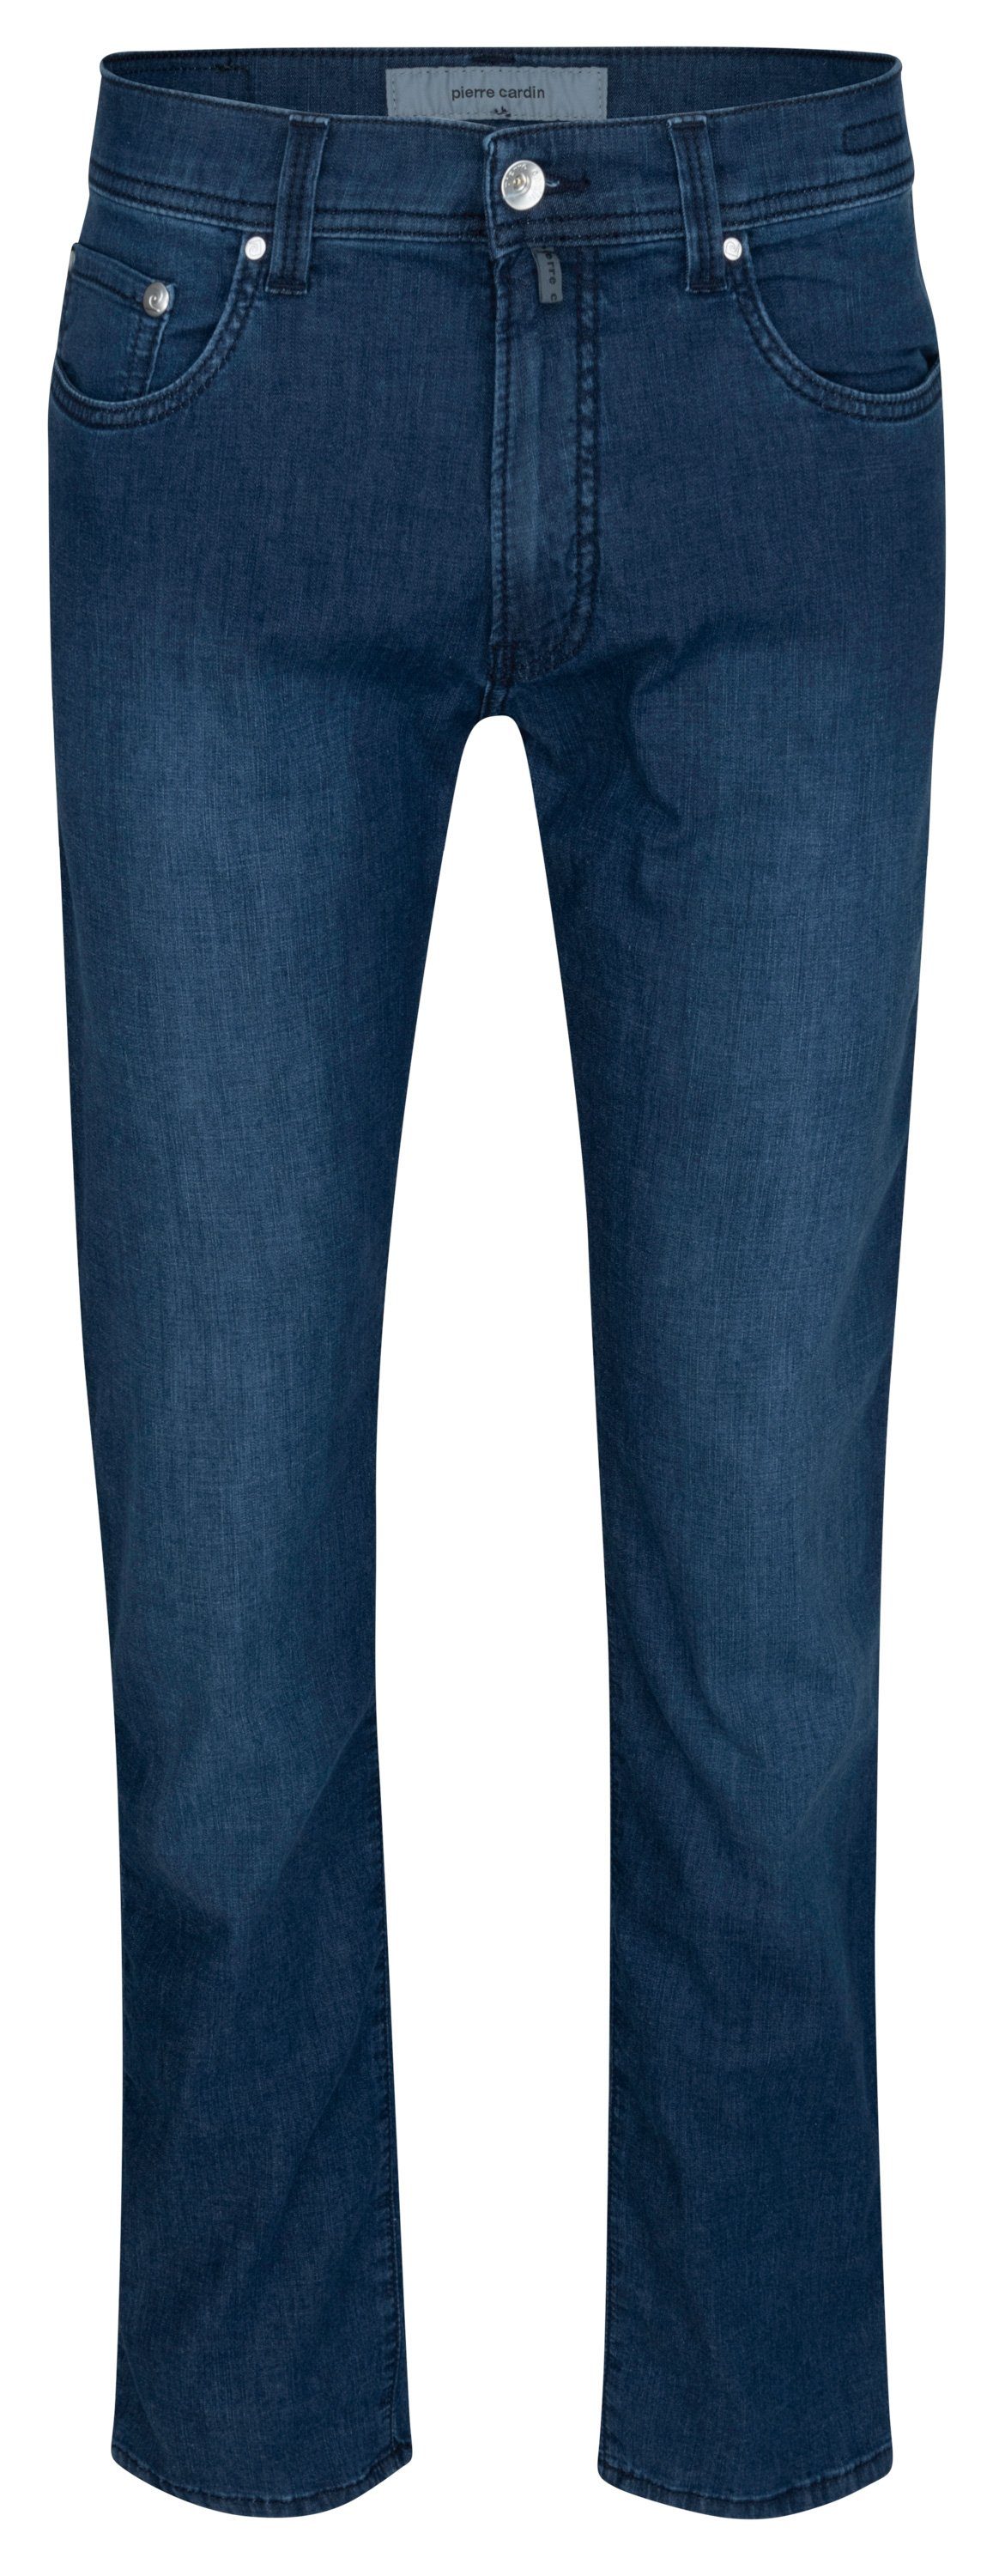 34510 TAPERED 5-Pocket-Jeans blue PIERRE CARDIN Pierre 7730.6810 raw LYON Cardin FUTUREFLEX dark -